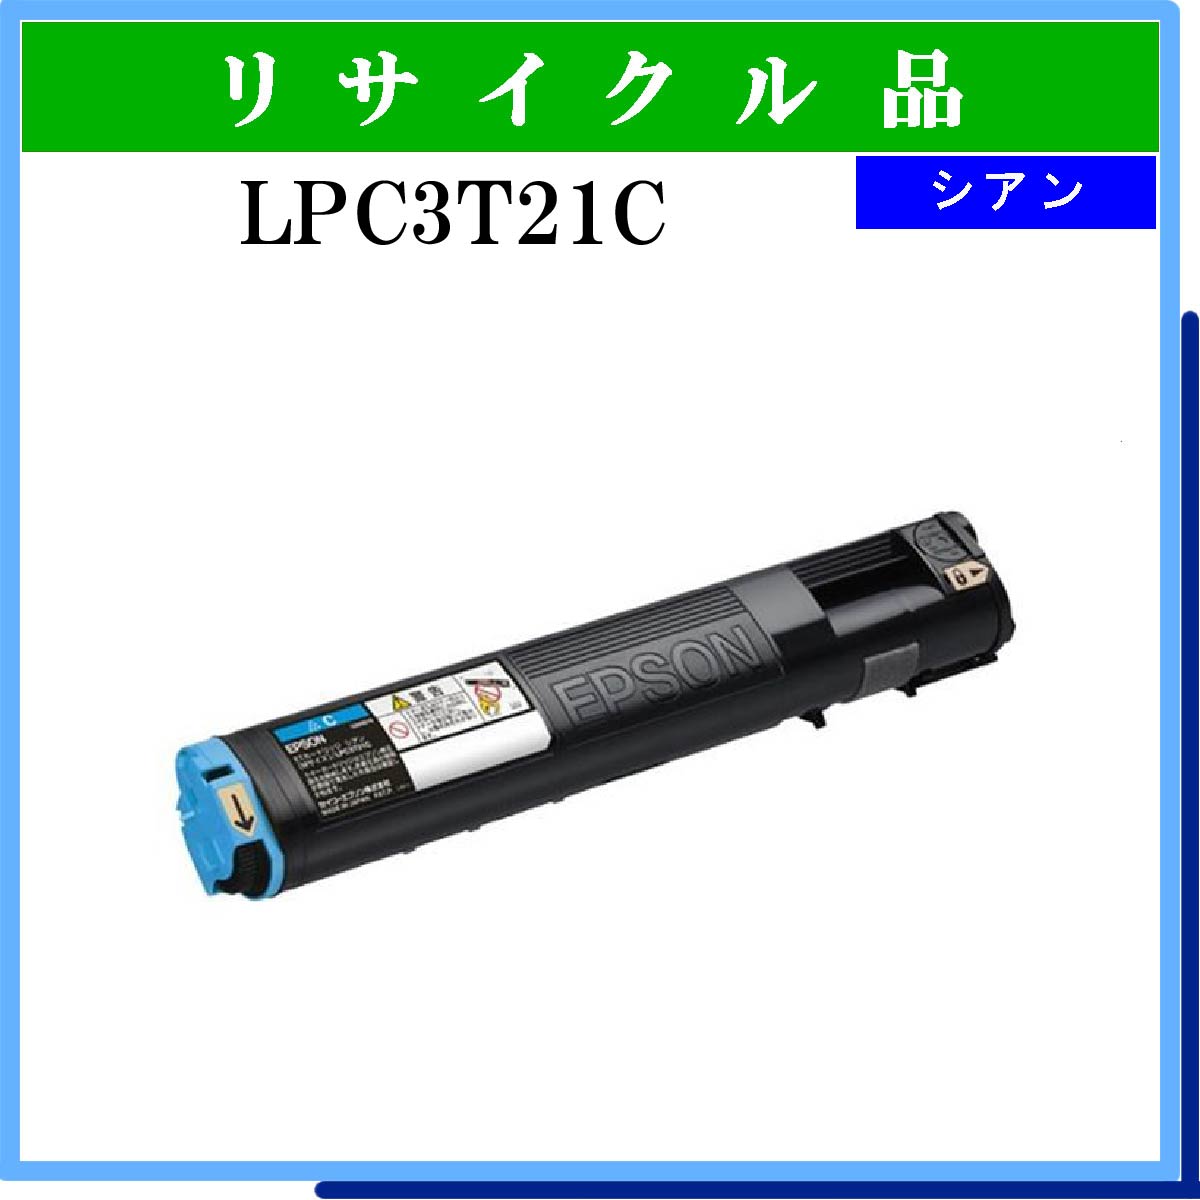 LPC3T21C